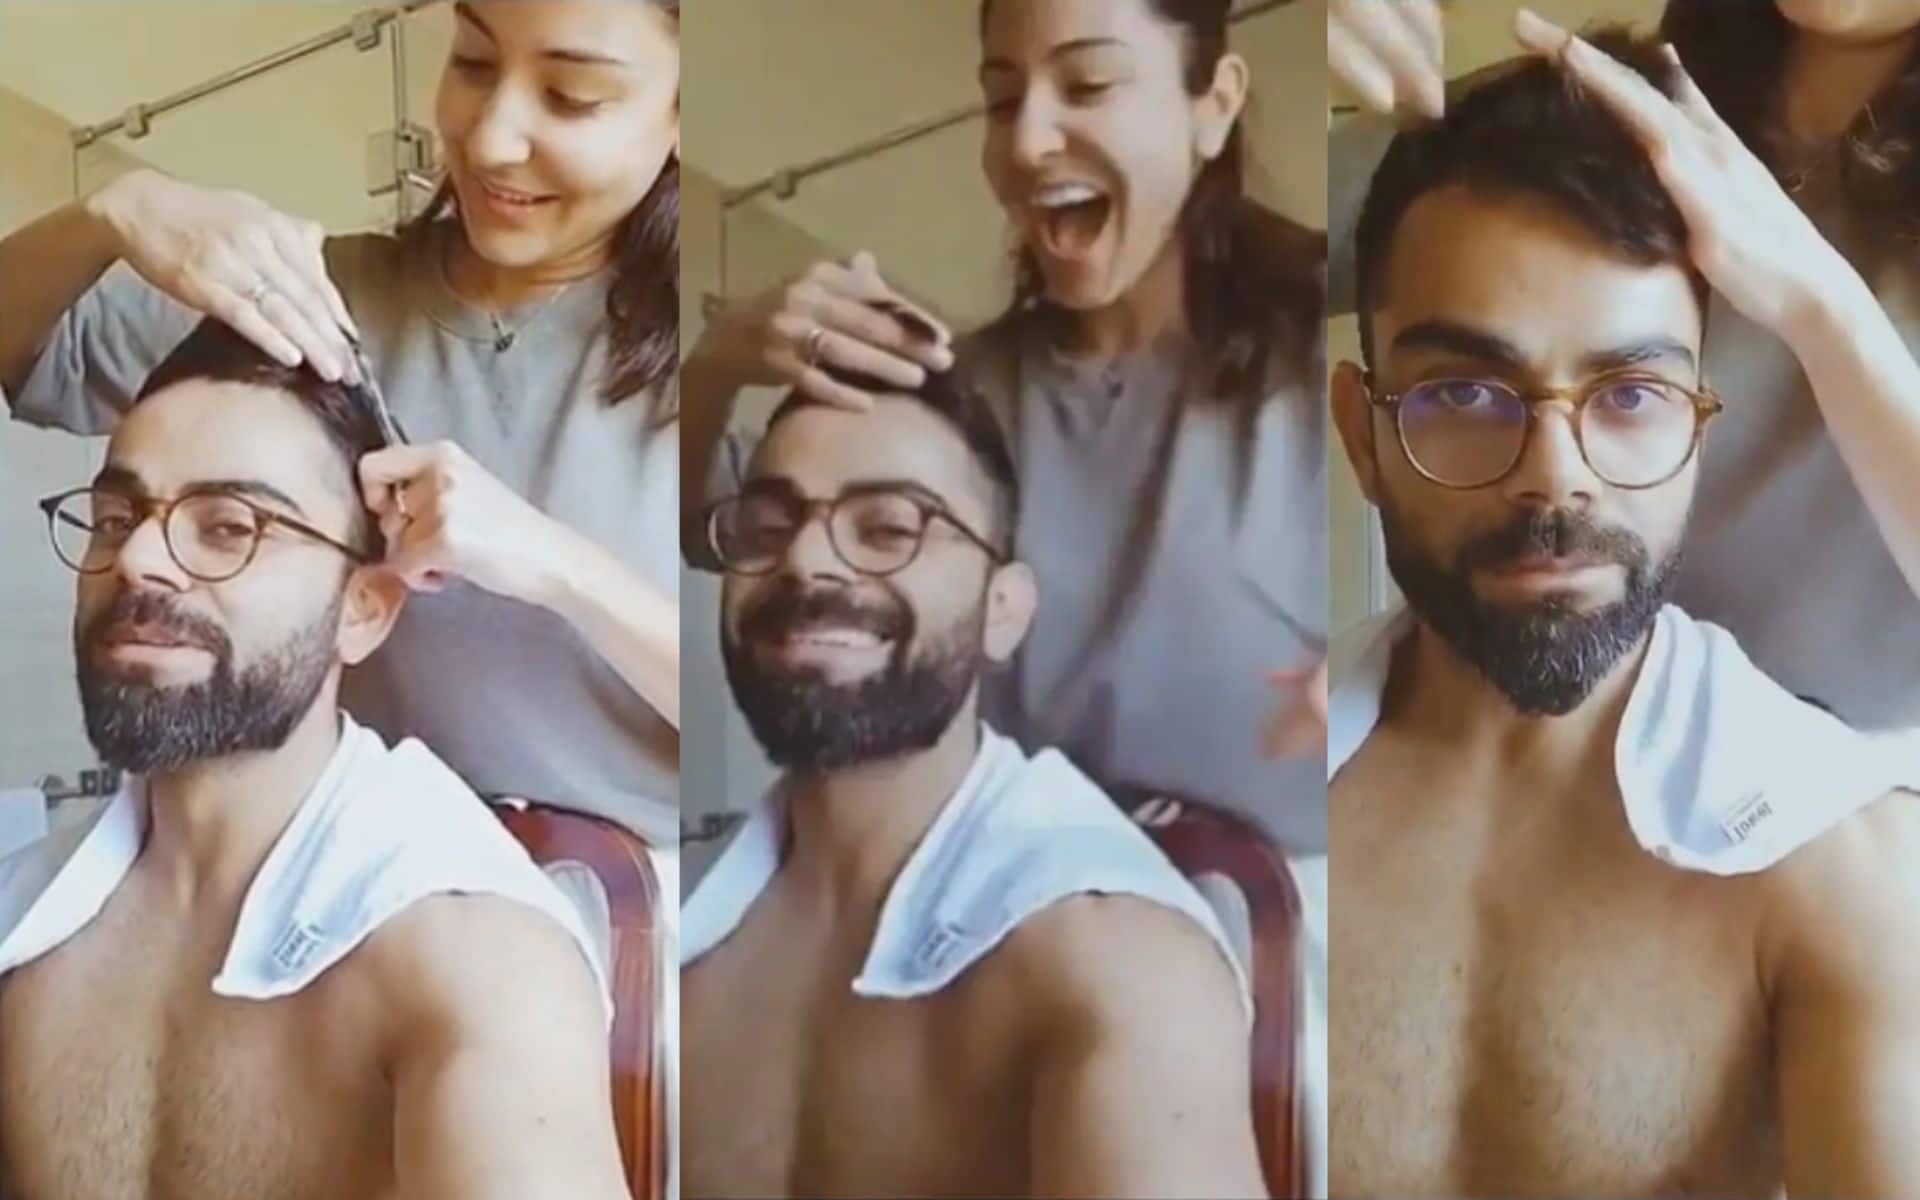 2020 - Virat Kohli got his hair cut by his wife Anushka Sharma [IG]